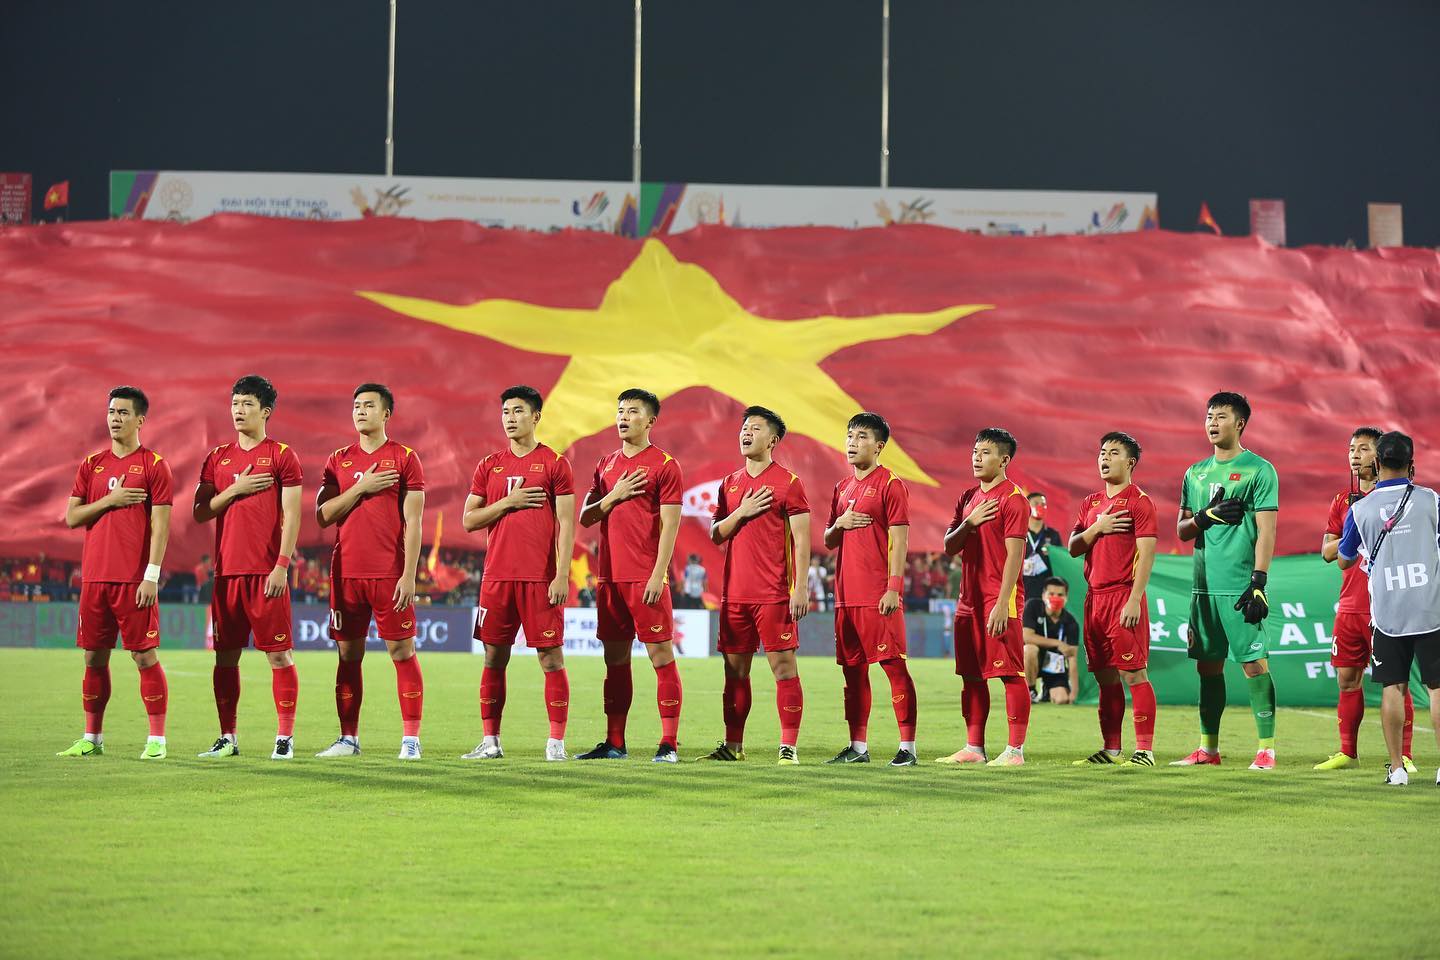 Đội tuyển U23 Việt Nam được kỳ vọng trong trận đấu chung kết với U23 Thái Lan tối nay.